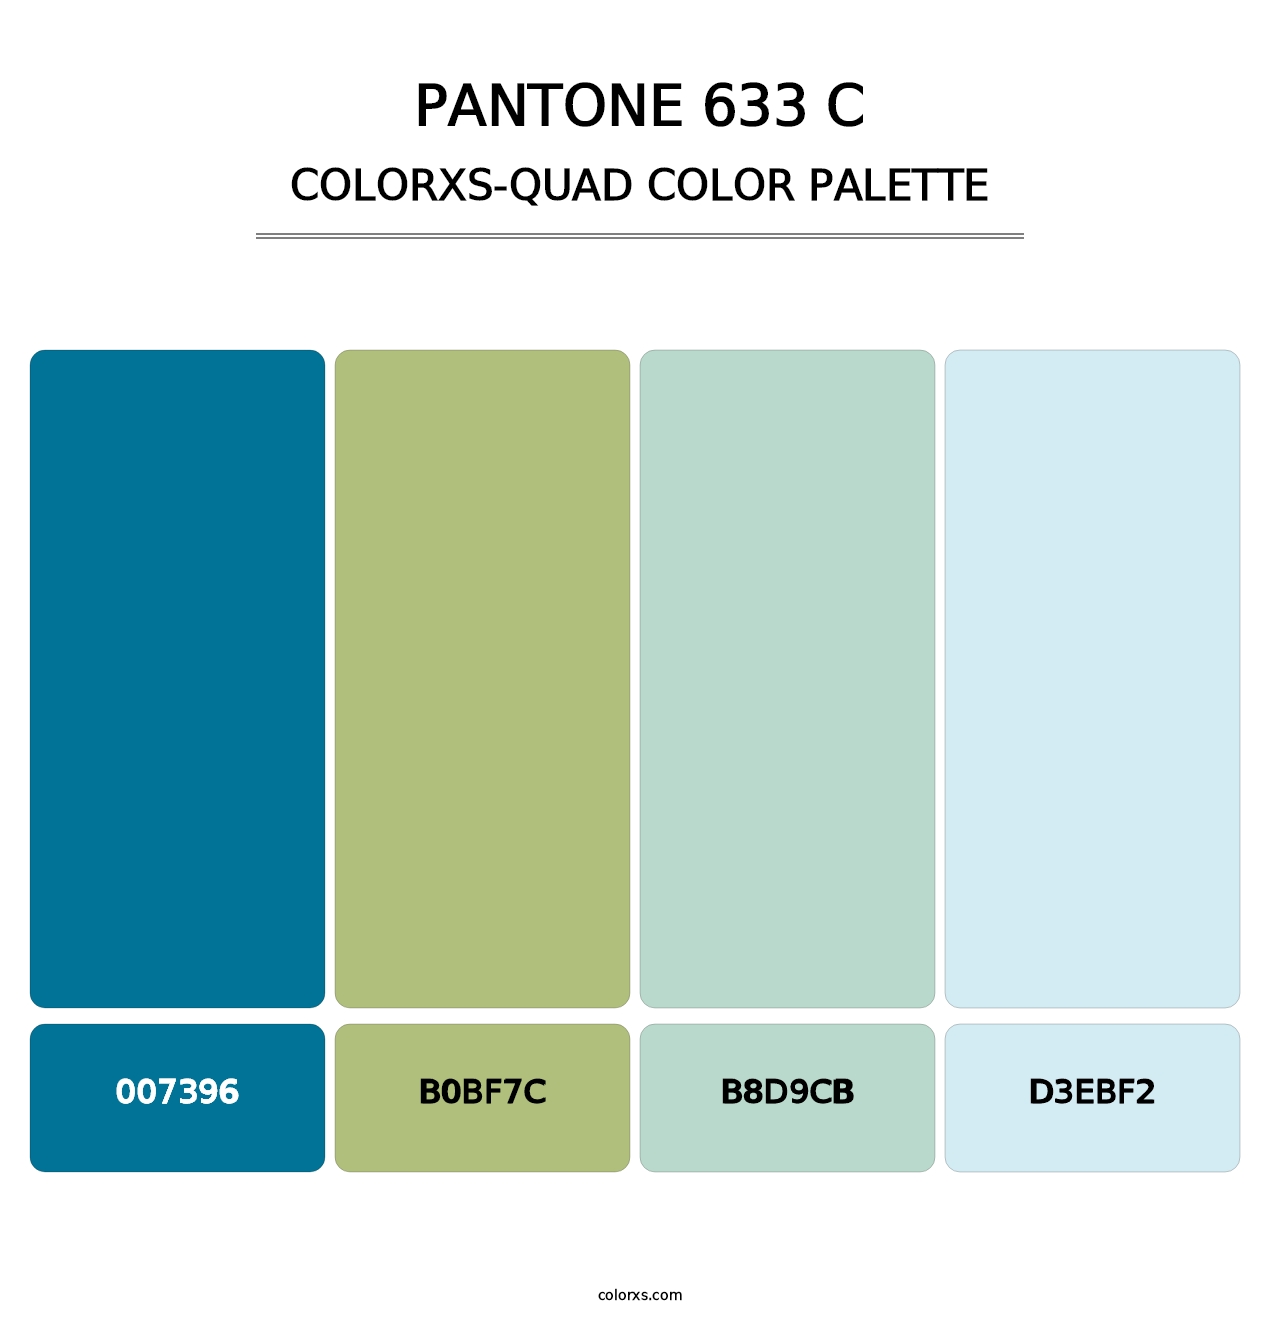 PANTONE 633 C - Colorxs Quad Palette